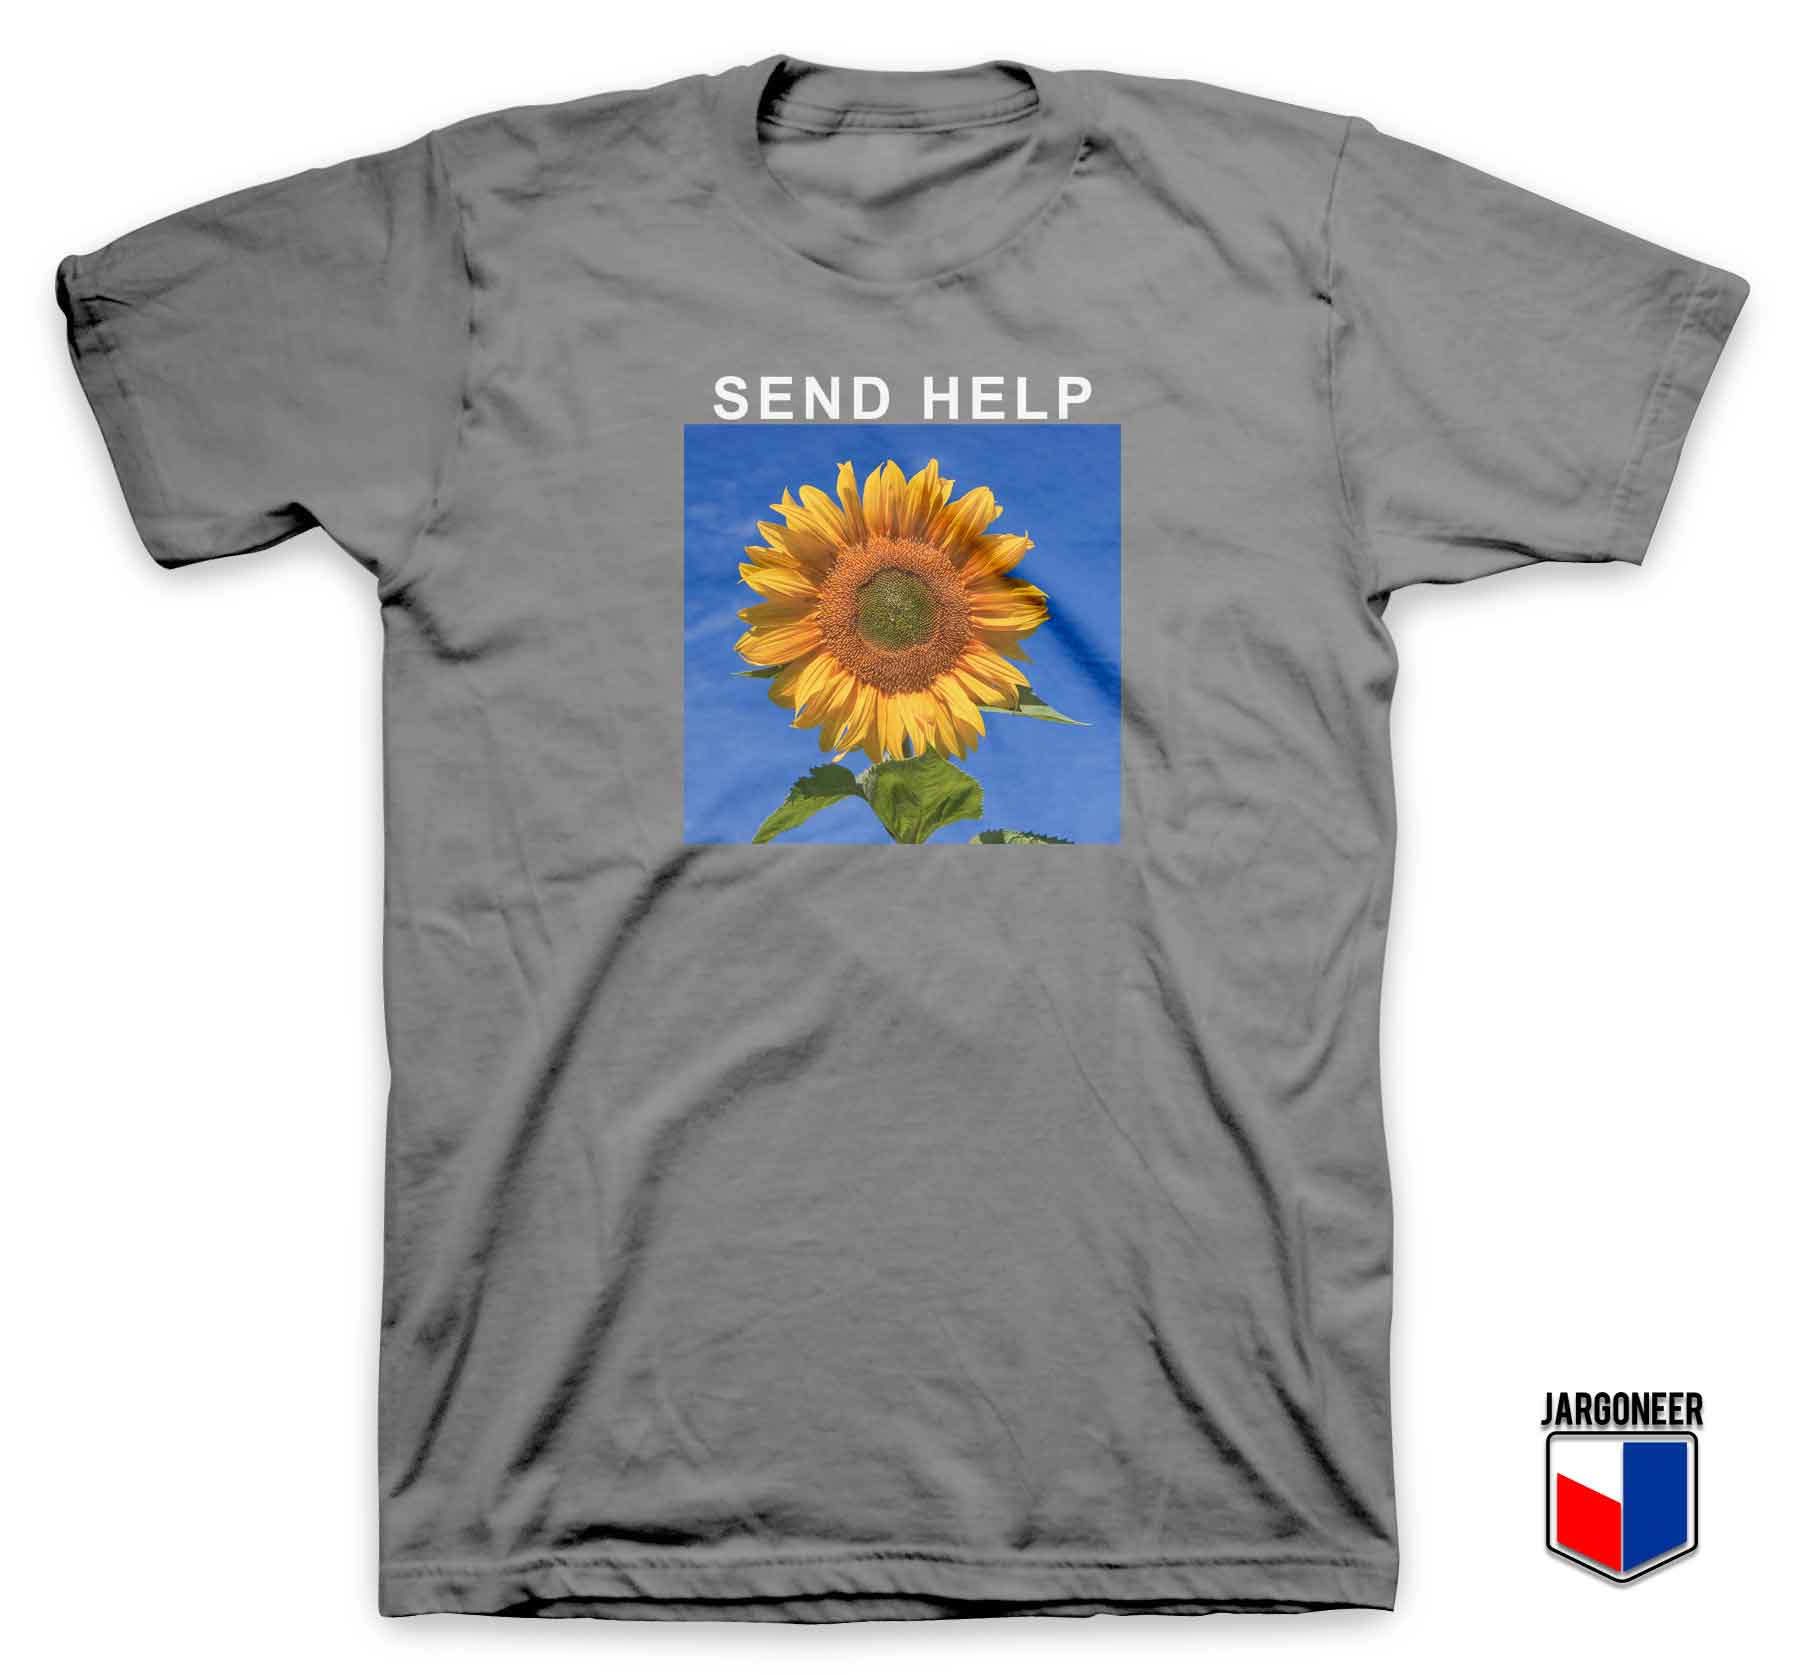 Send Help Sun Flower - Shop Unique Graphic Cool Shirt Designs